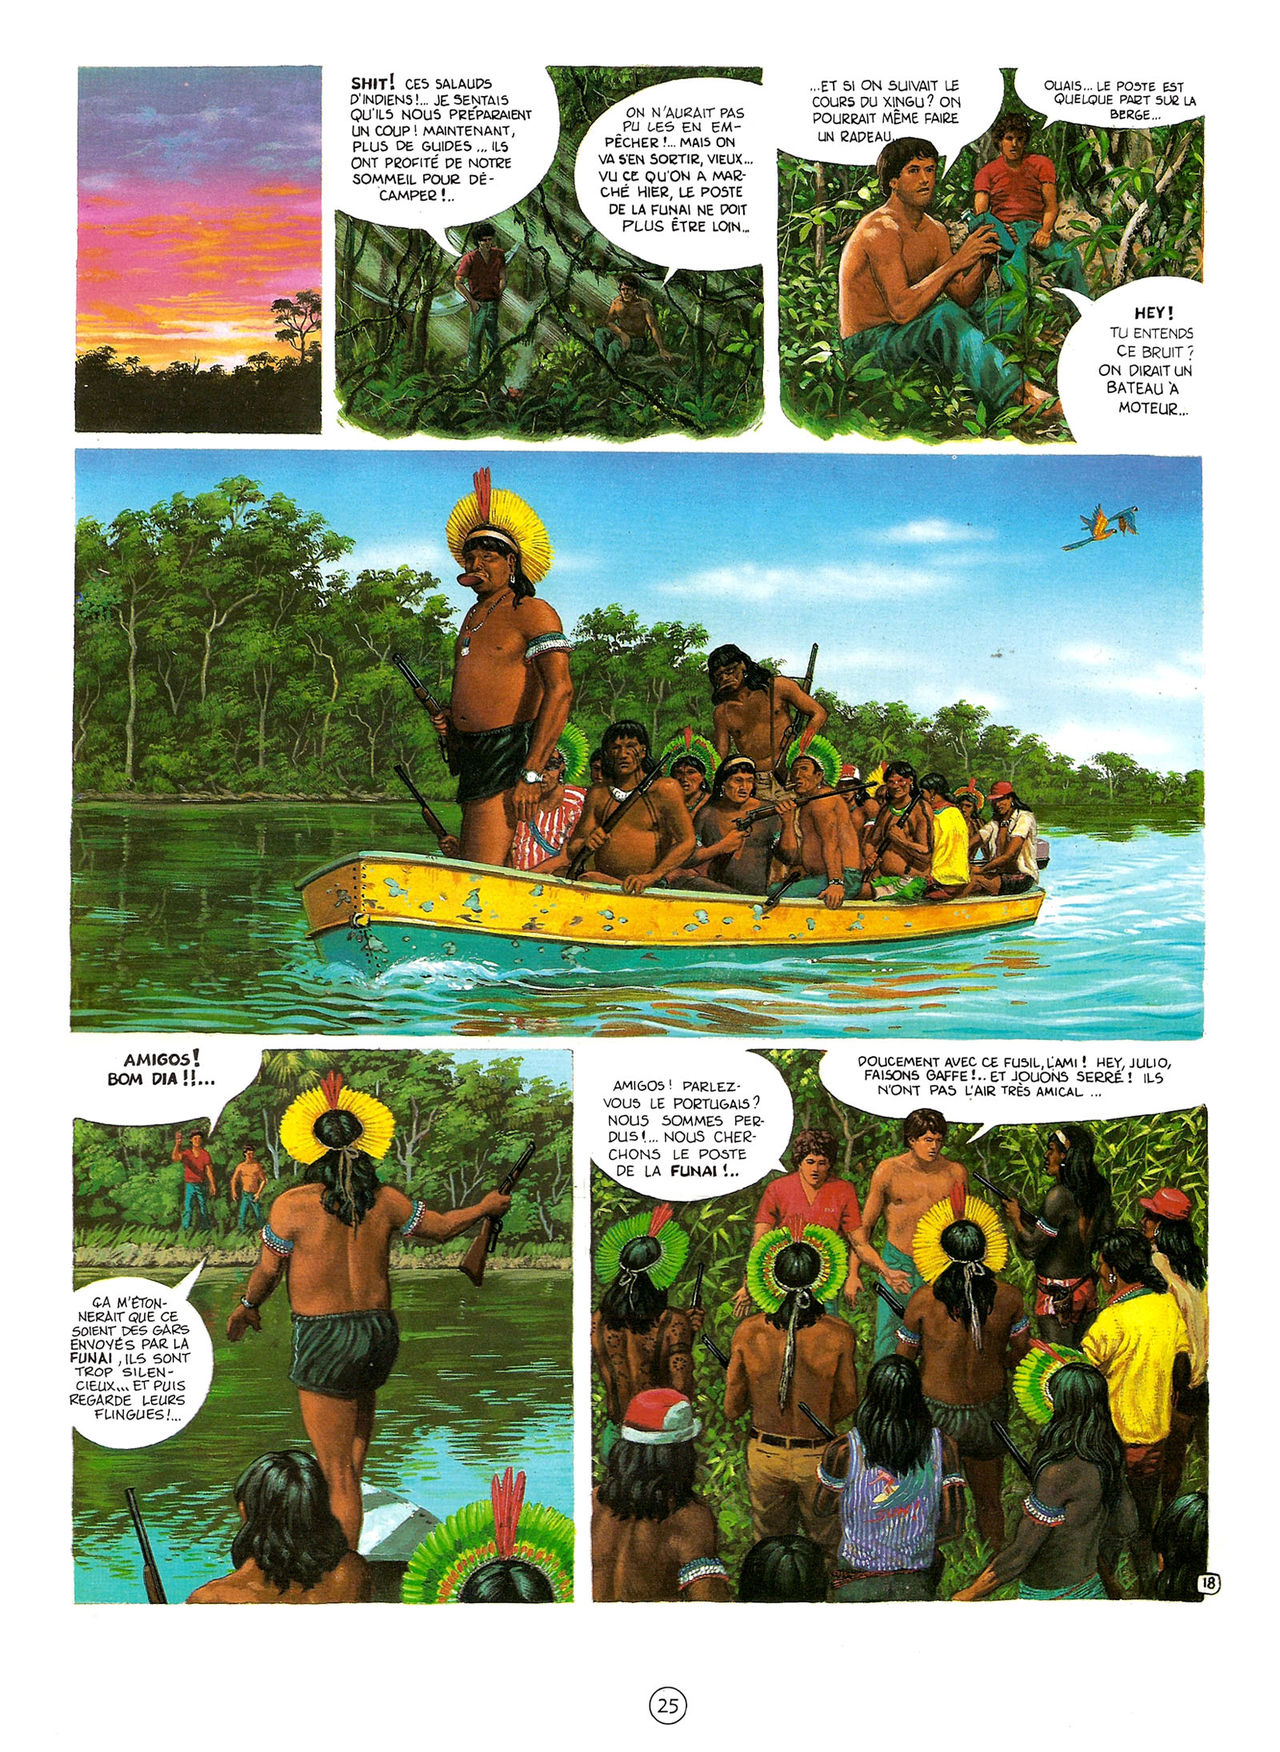 Les Aventures de Vic Voyage 05 - Brazil! numero d'image 25